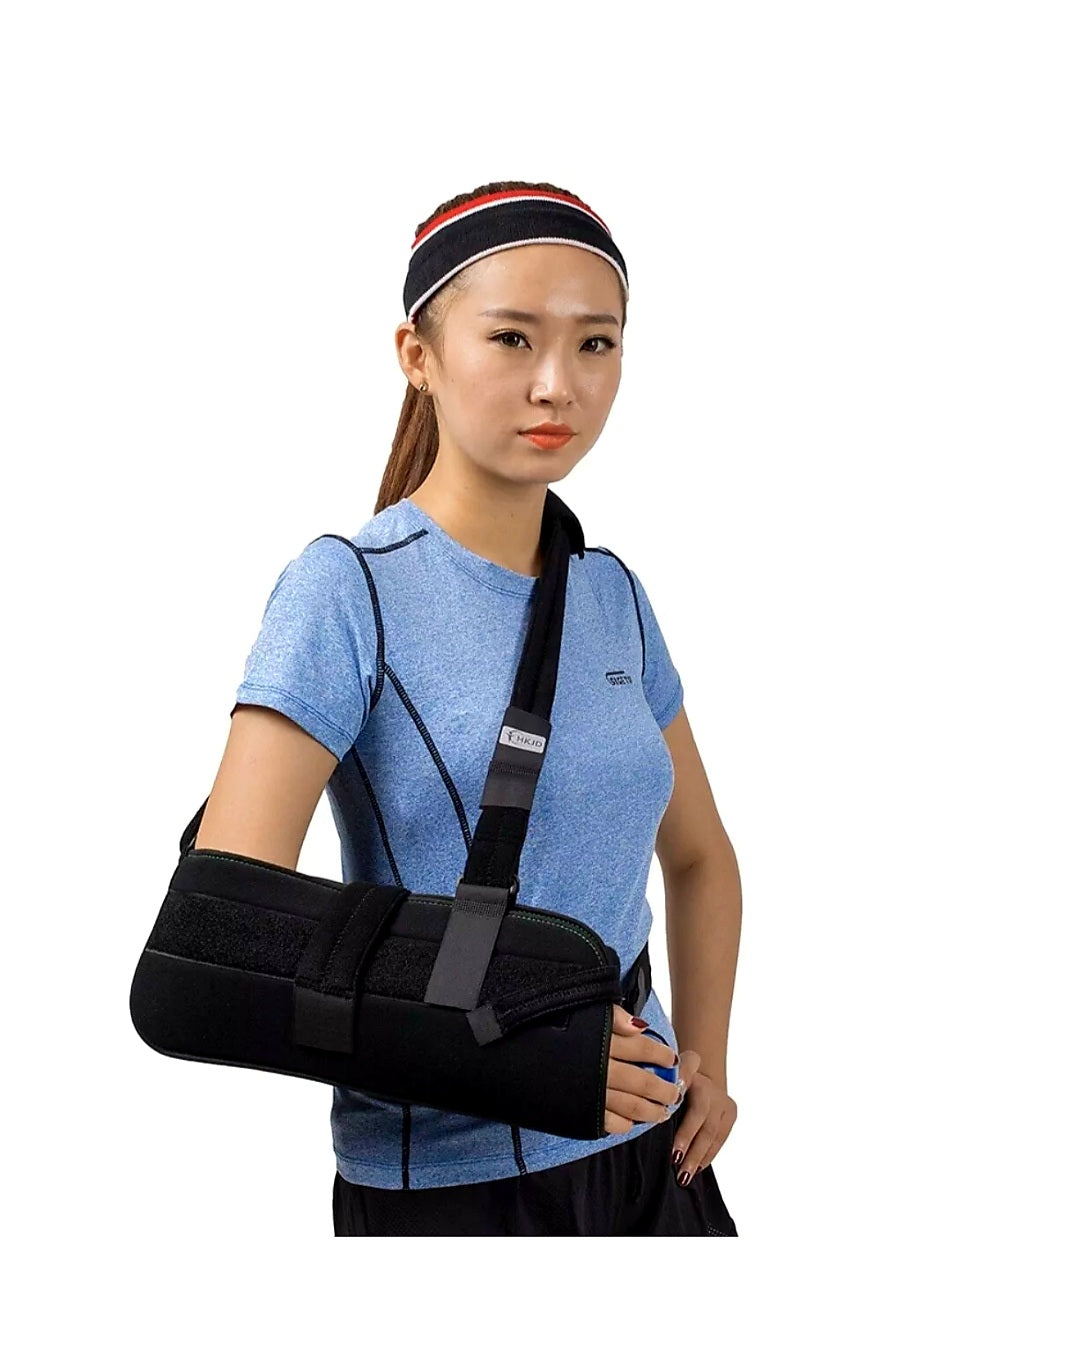 Shoulder Brace Immobilizer, Shoulder Pillow Brace Abduction Sling - Peoples Care Medical Supply